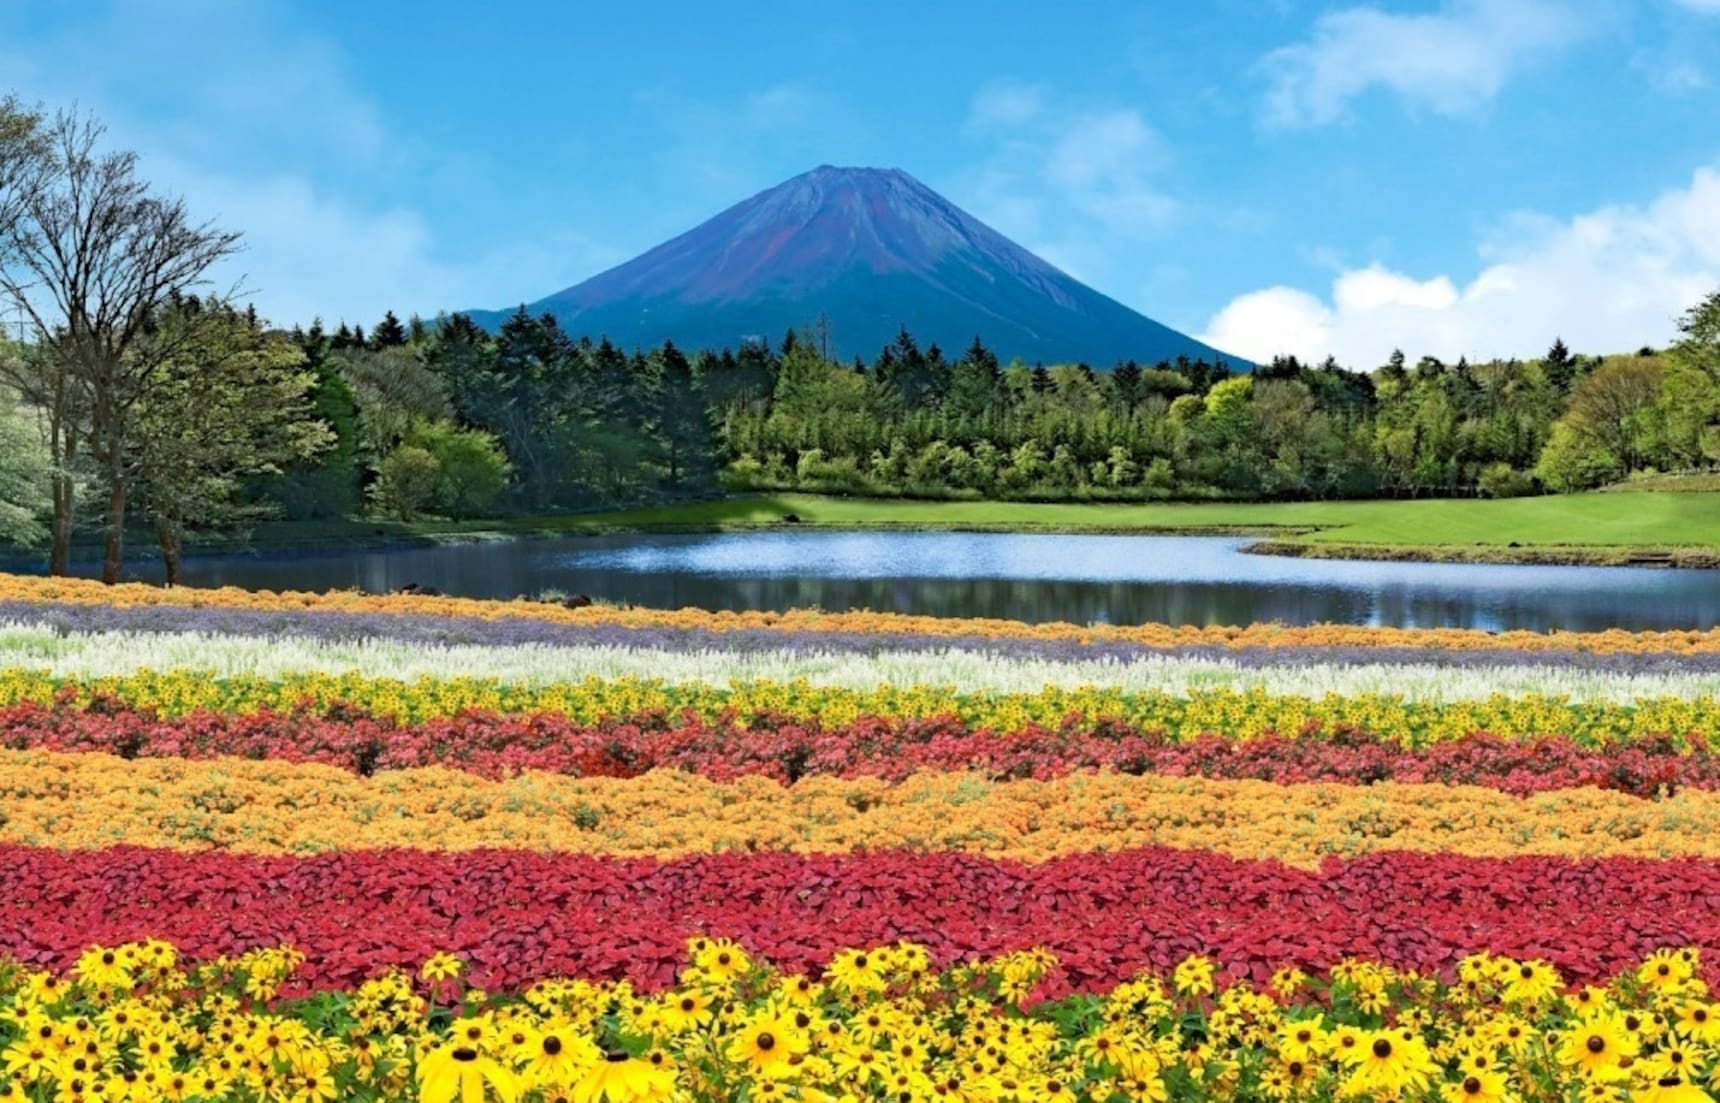 日本自由行 绝对不能错过的富士山网红景点 22最新版 All About Japan